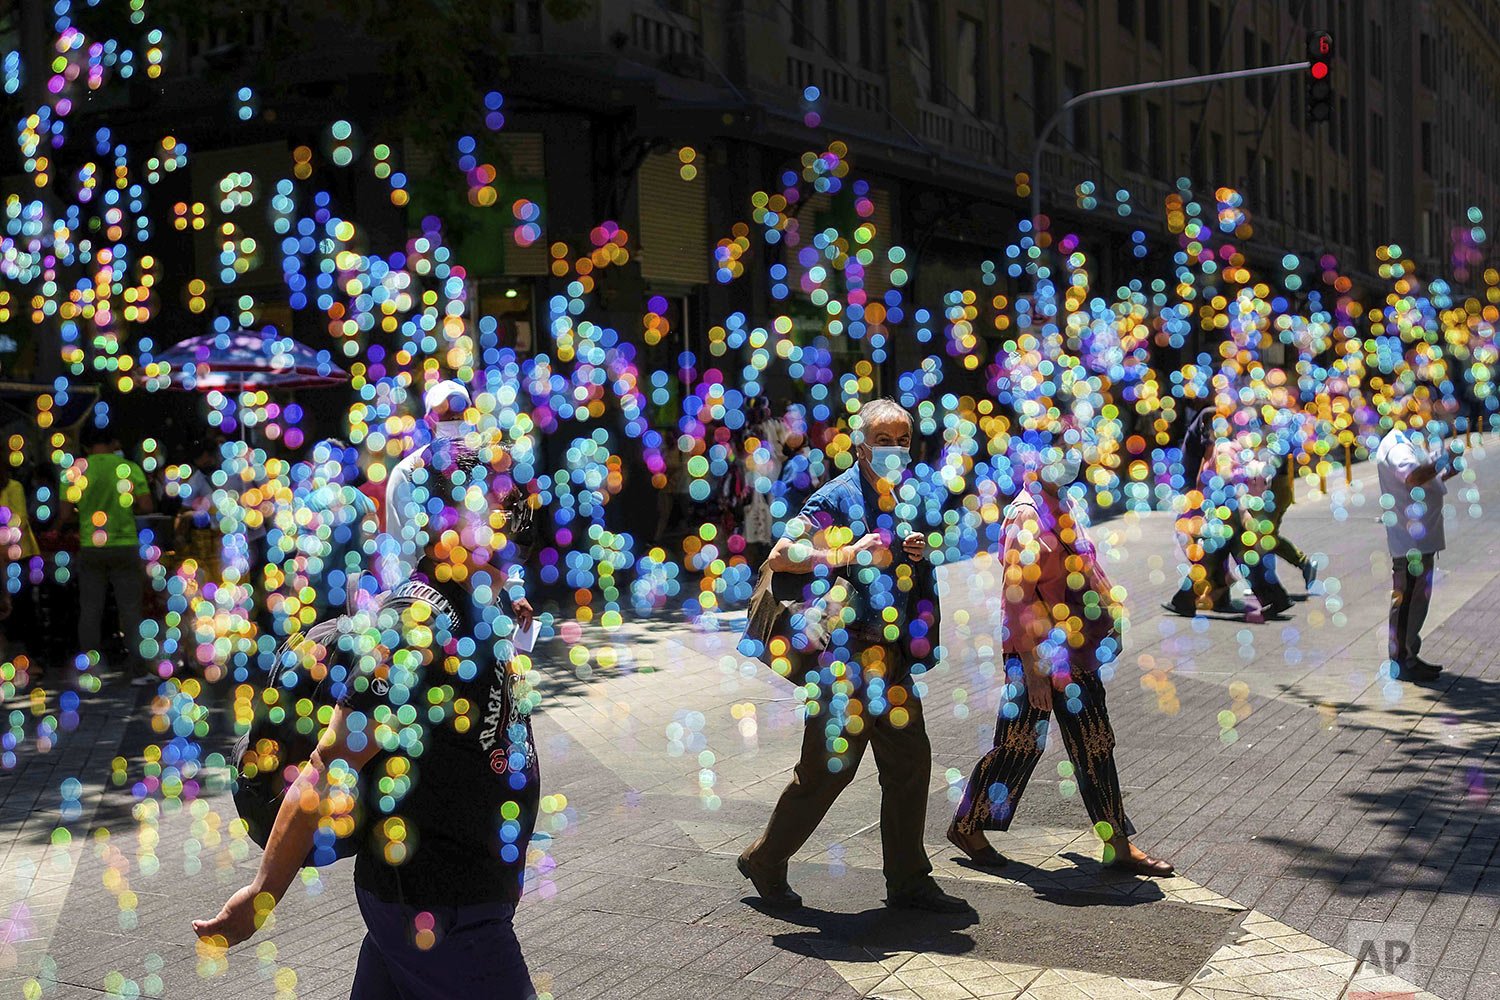  People cross a street amid soap bubbles in downtown Santiago, Chile, Dec. 3, 2021. (AP Photo/Matias Delacroix) 